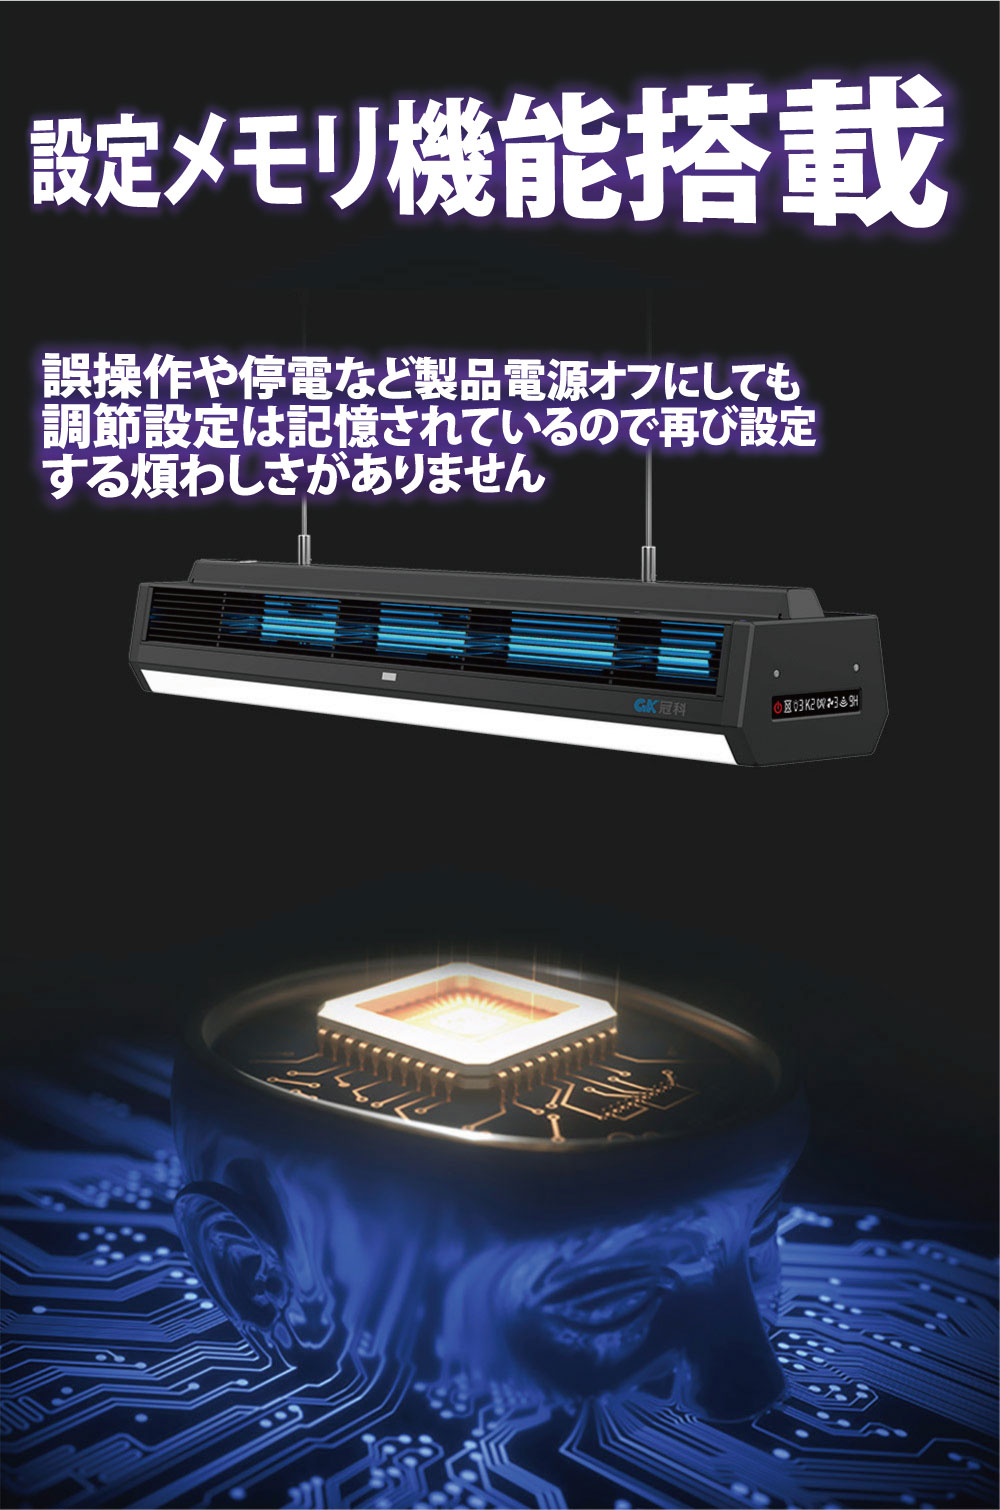 天井設置型UV-C紫外線除菌殺菌照明 CR-GKU19-125 カラー:ブラックorホワイト